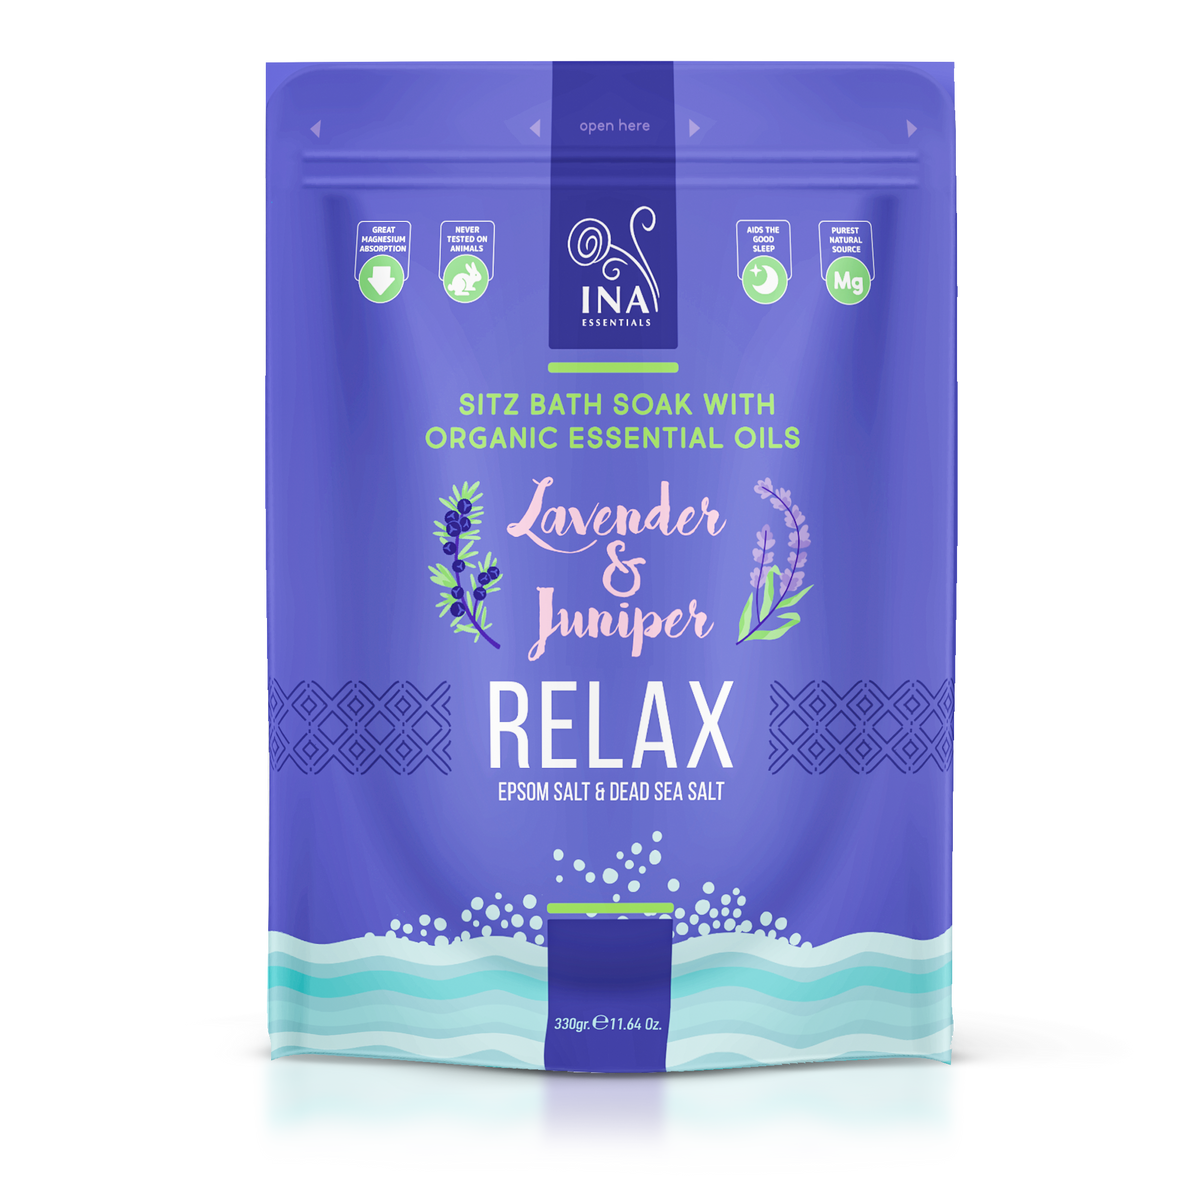 Relax – Sol za kupku s lavandom i borovicom za opuštanje i ublažavanje stresa